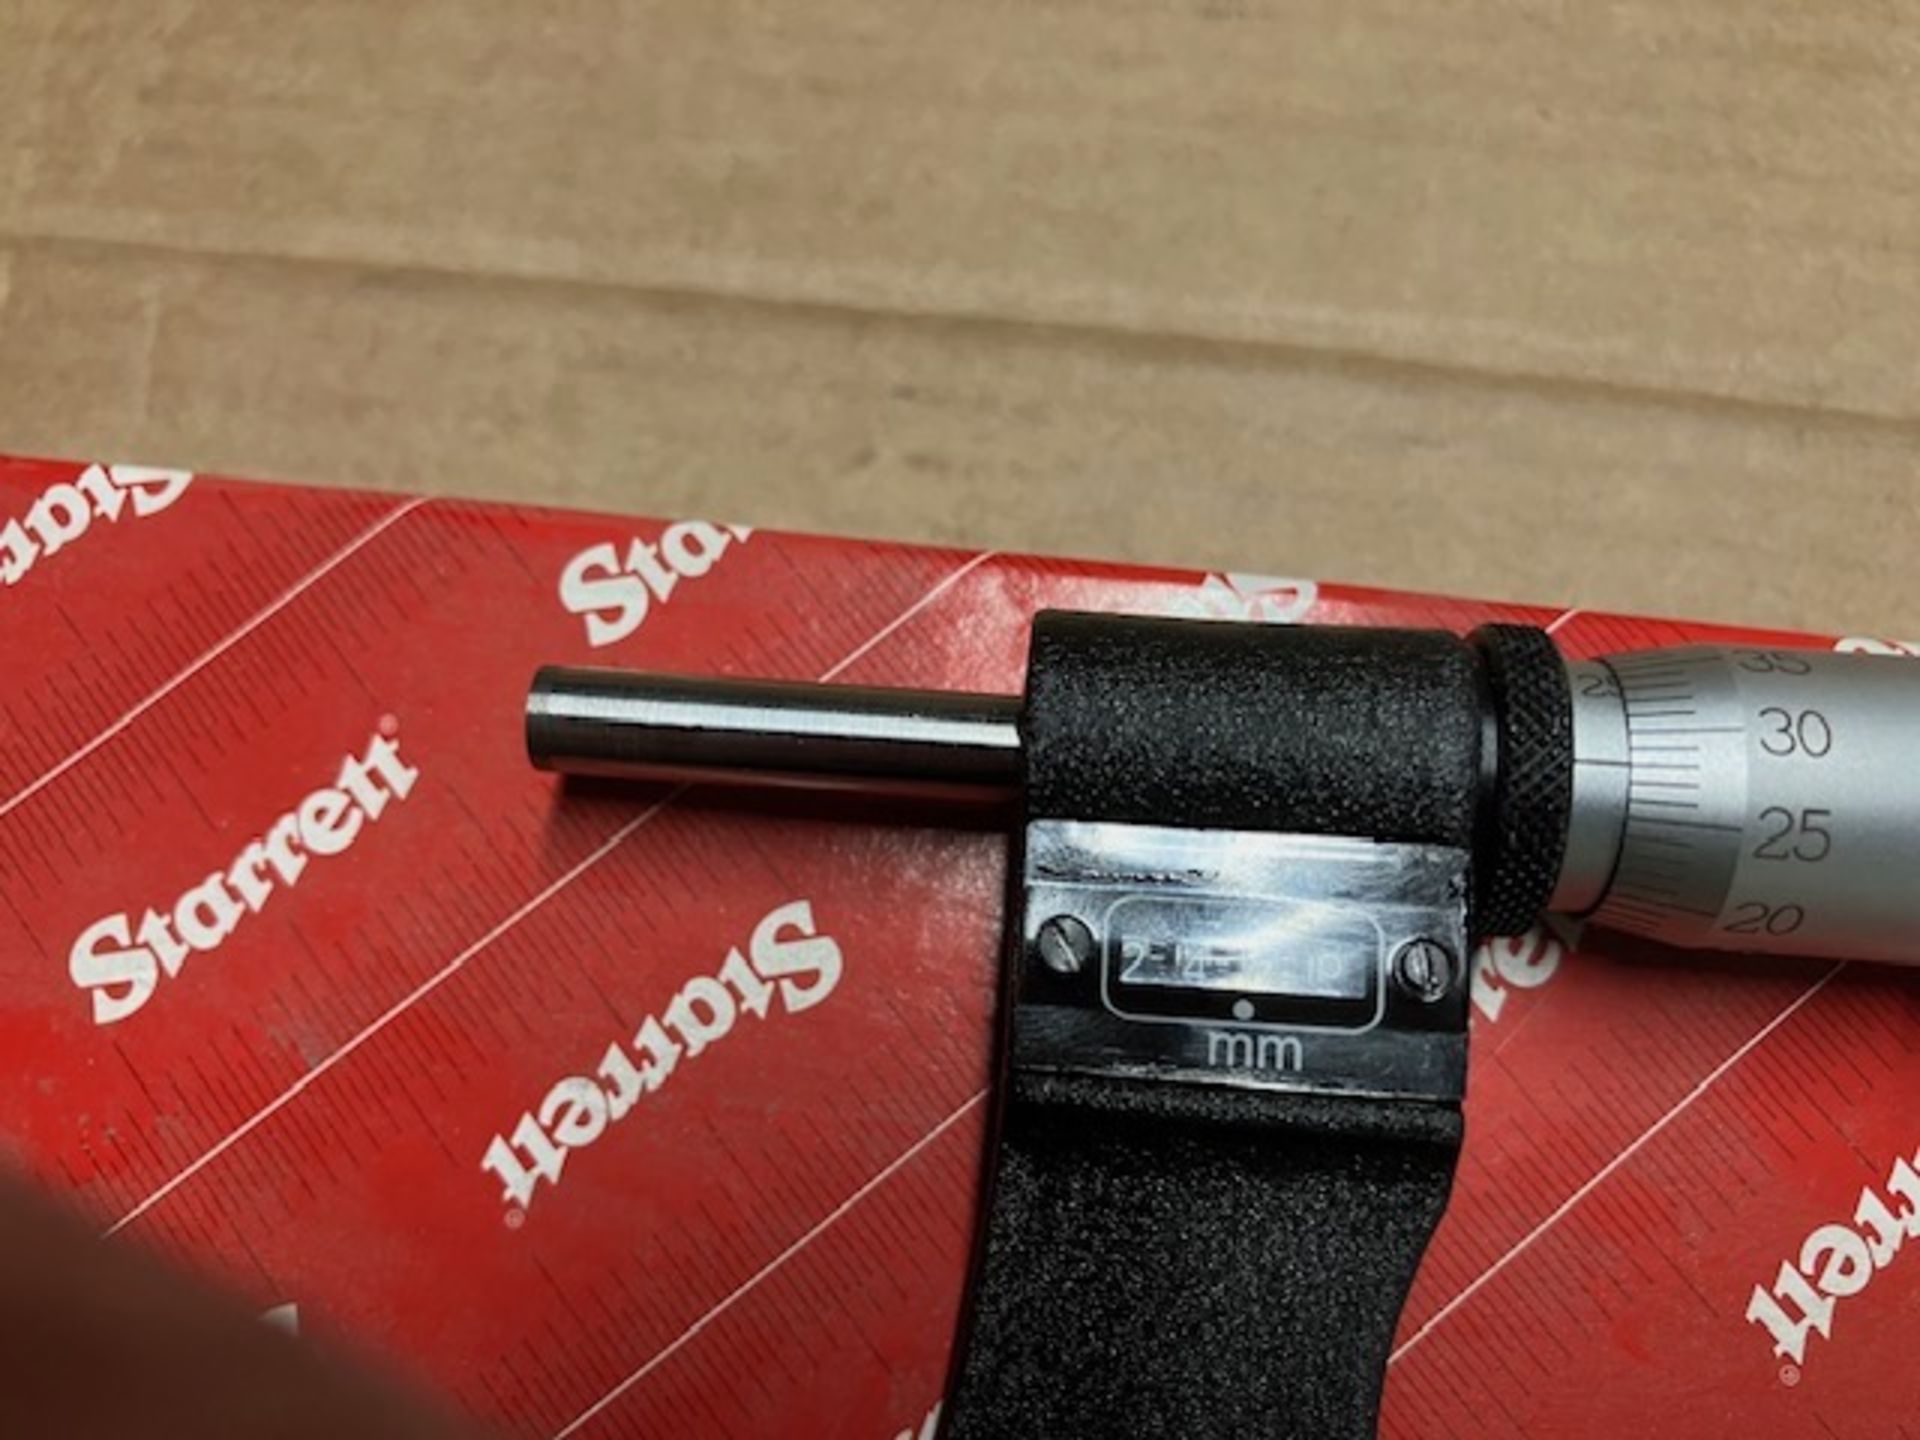 216MXRL-150 Digital Outside Micrometer, Ratchet Thimble, Carbide Anvil-Spindle, 125-150mm Range, 0.0 - Image 2 of 3